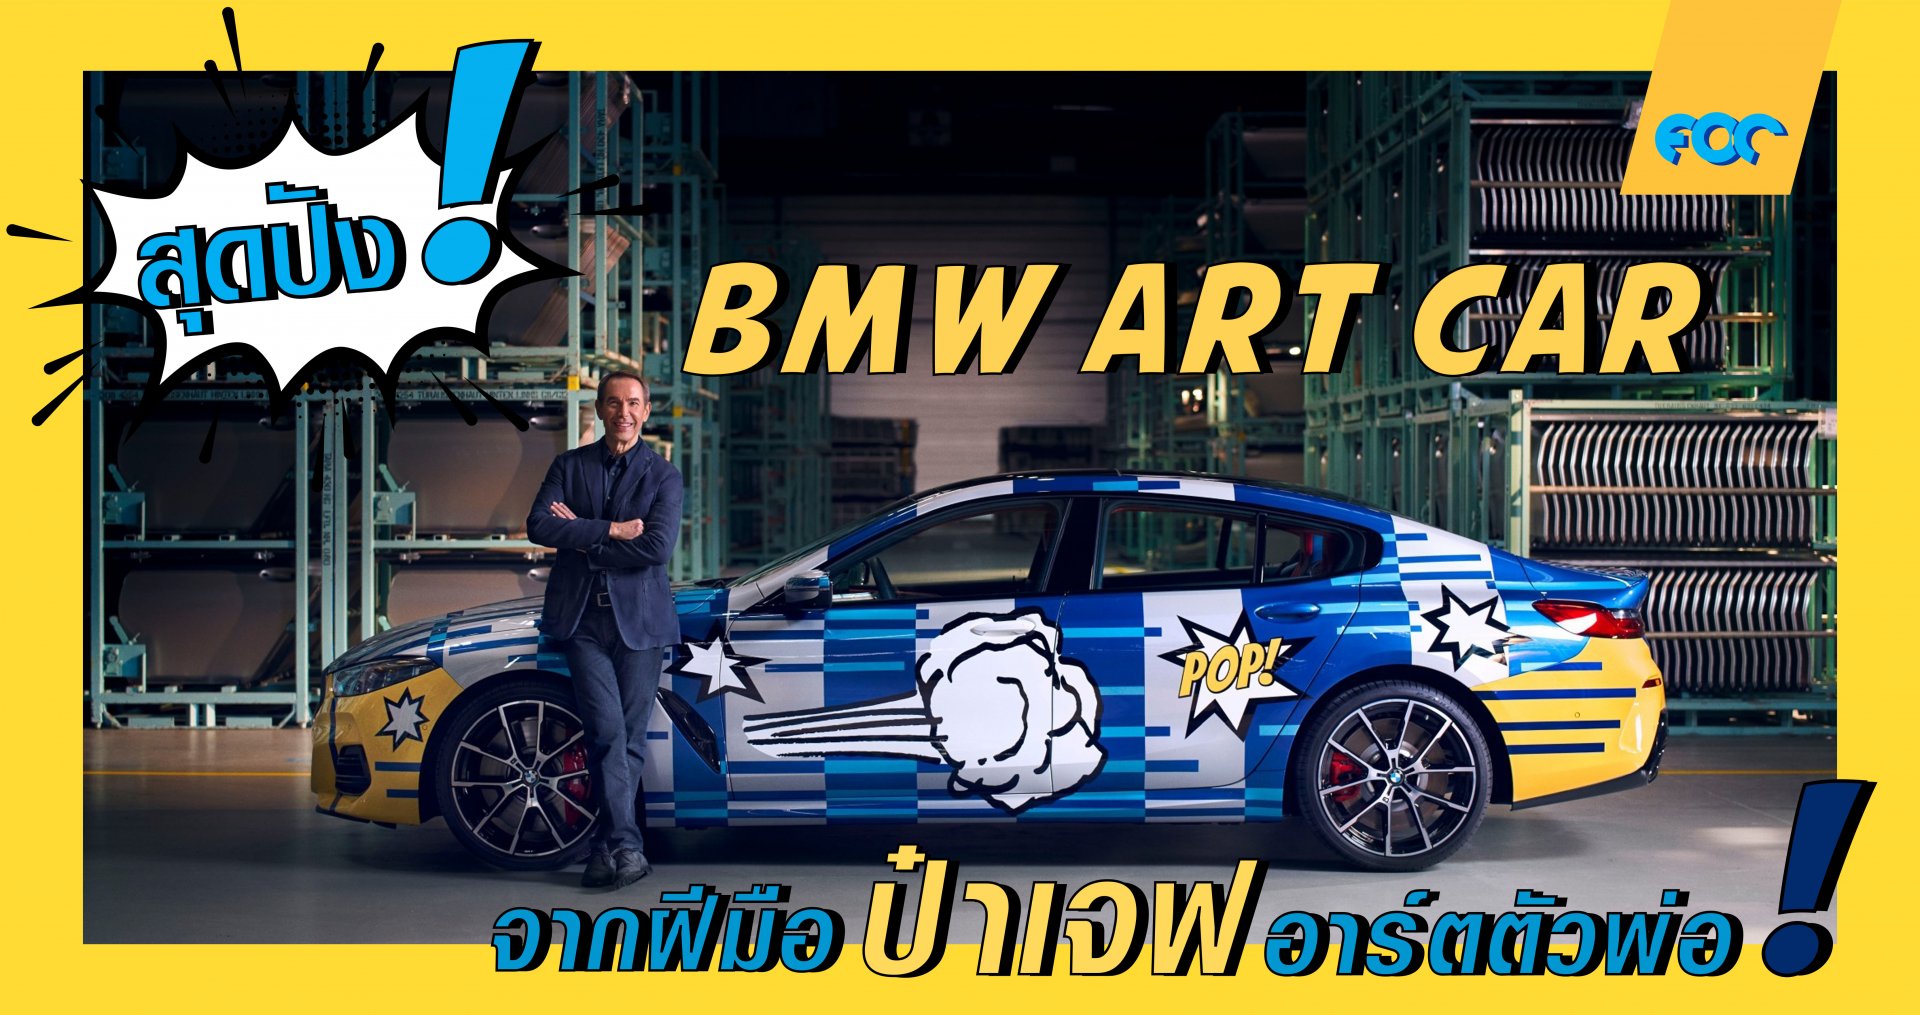 สุดปัง! มาดู BMW ART CAR คันล่าสุด จากฝีมือป๋าเจฟอาร์ตตัวพ่อกัน!